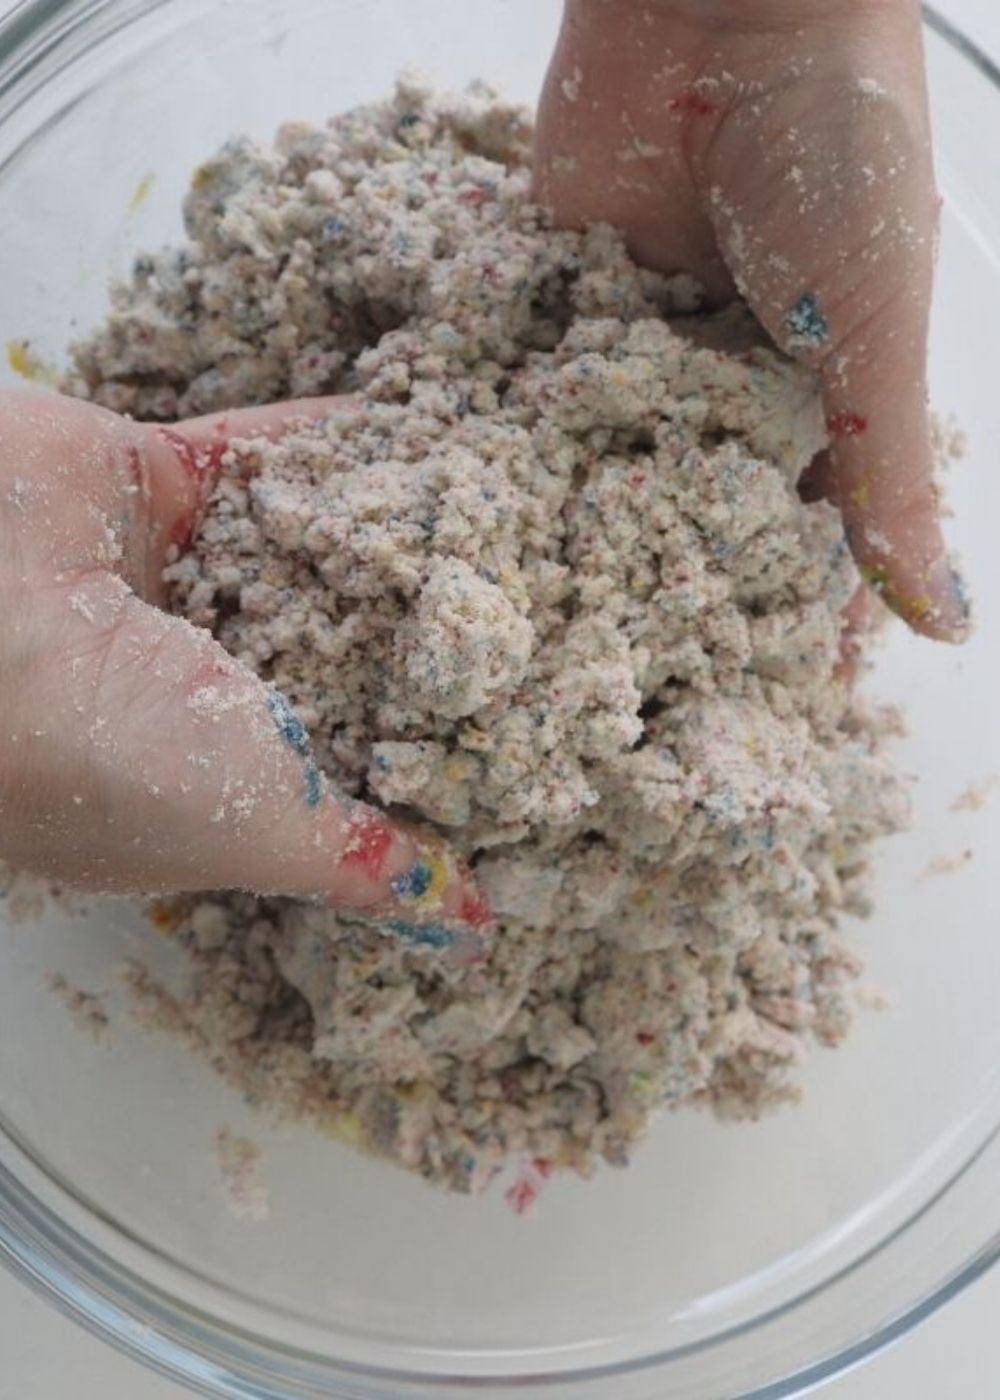 DIY Spielsand wie Kinetic Sand selber machen - weicher Spielsand 